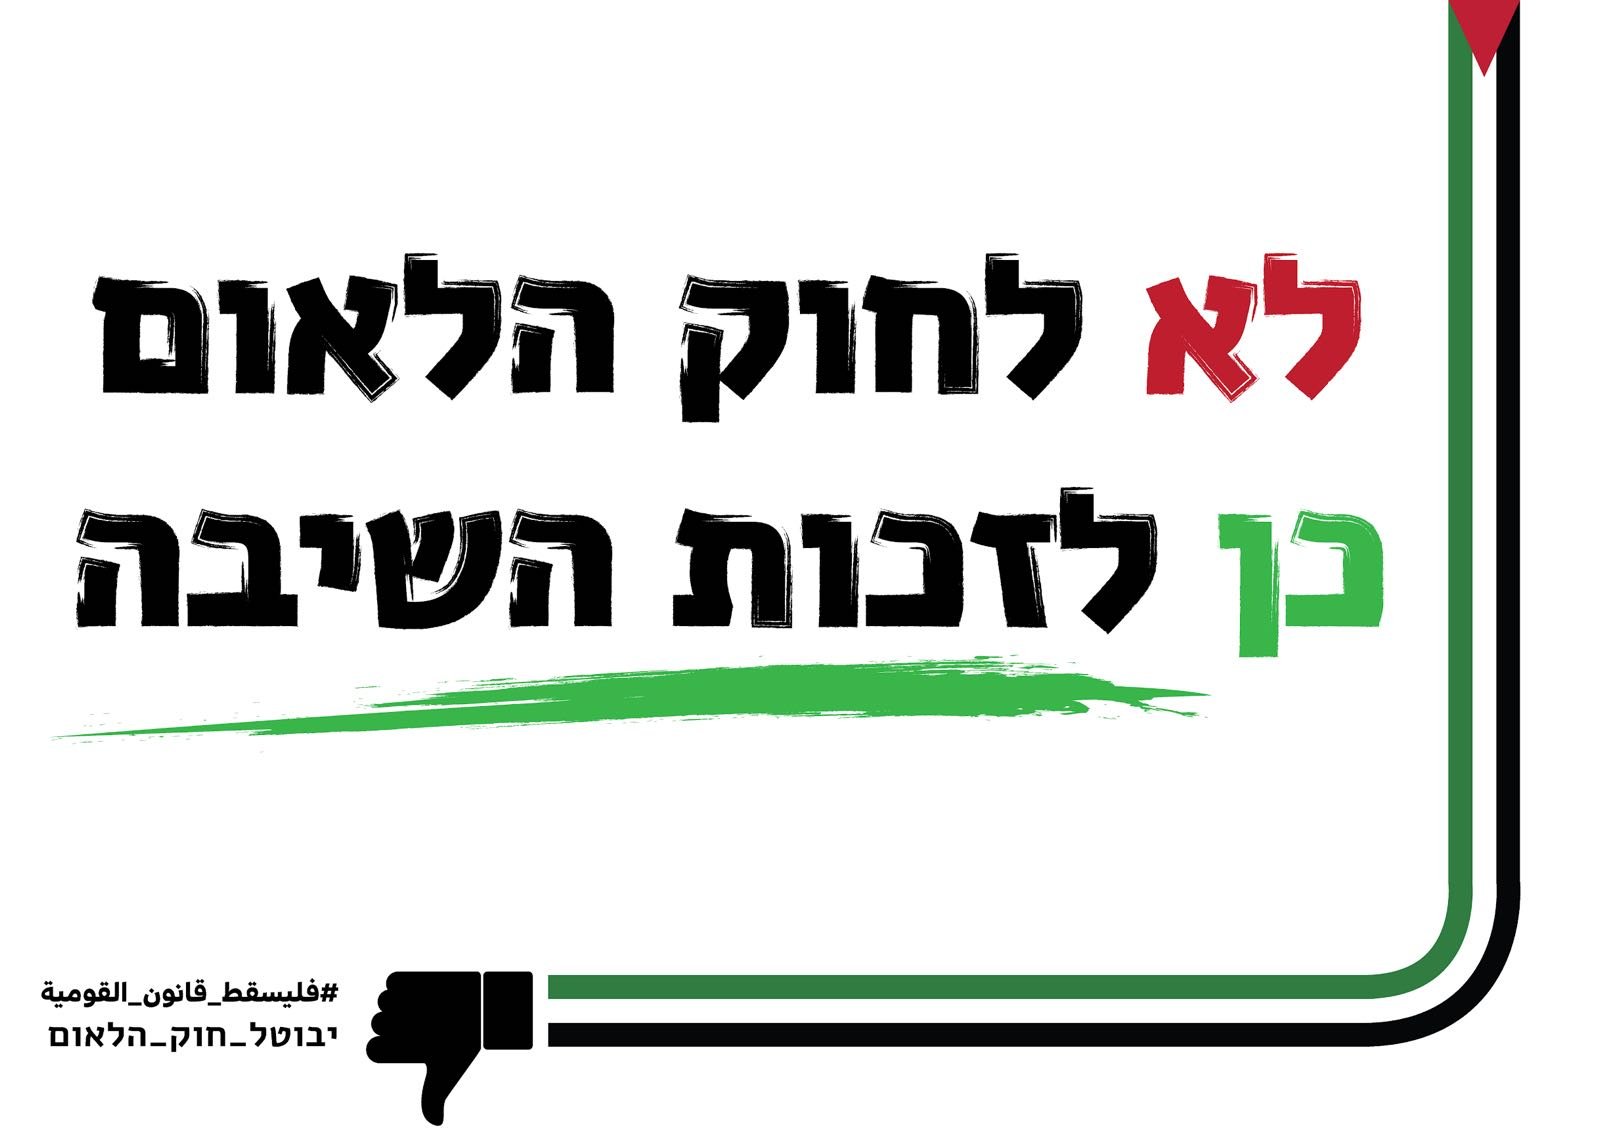 اليوم: هلمّوا بجماهيركم للتظاهر في قلب تلّ أبيب-4